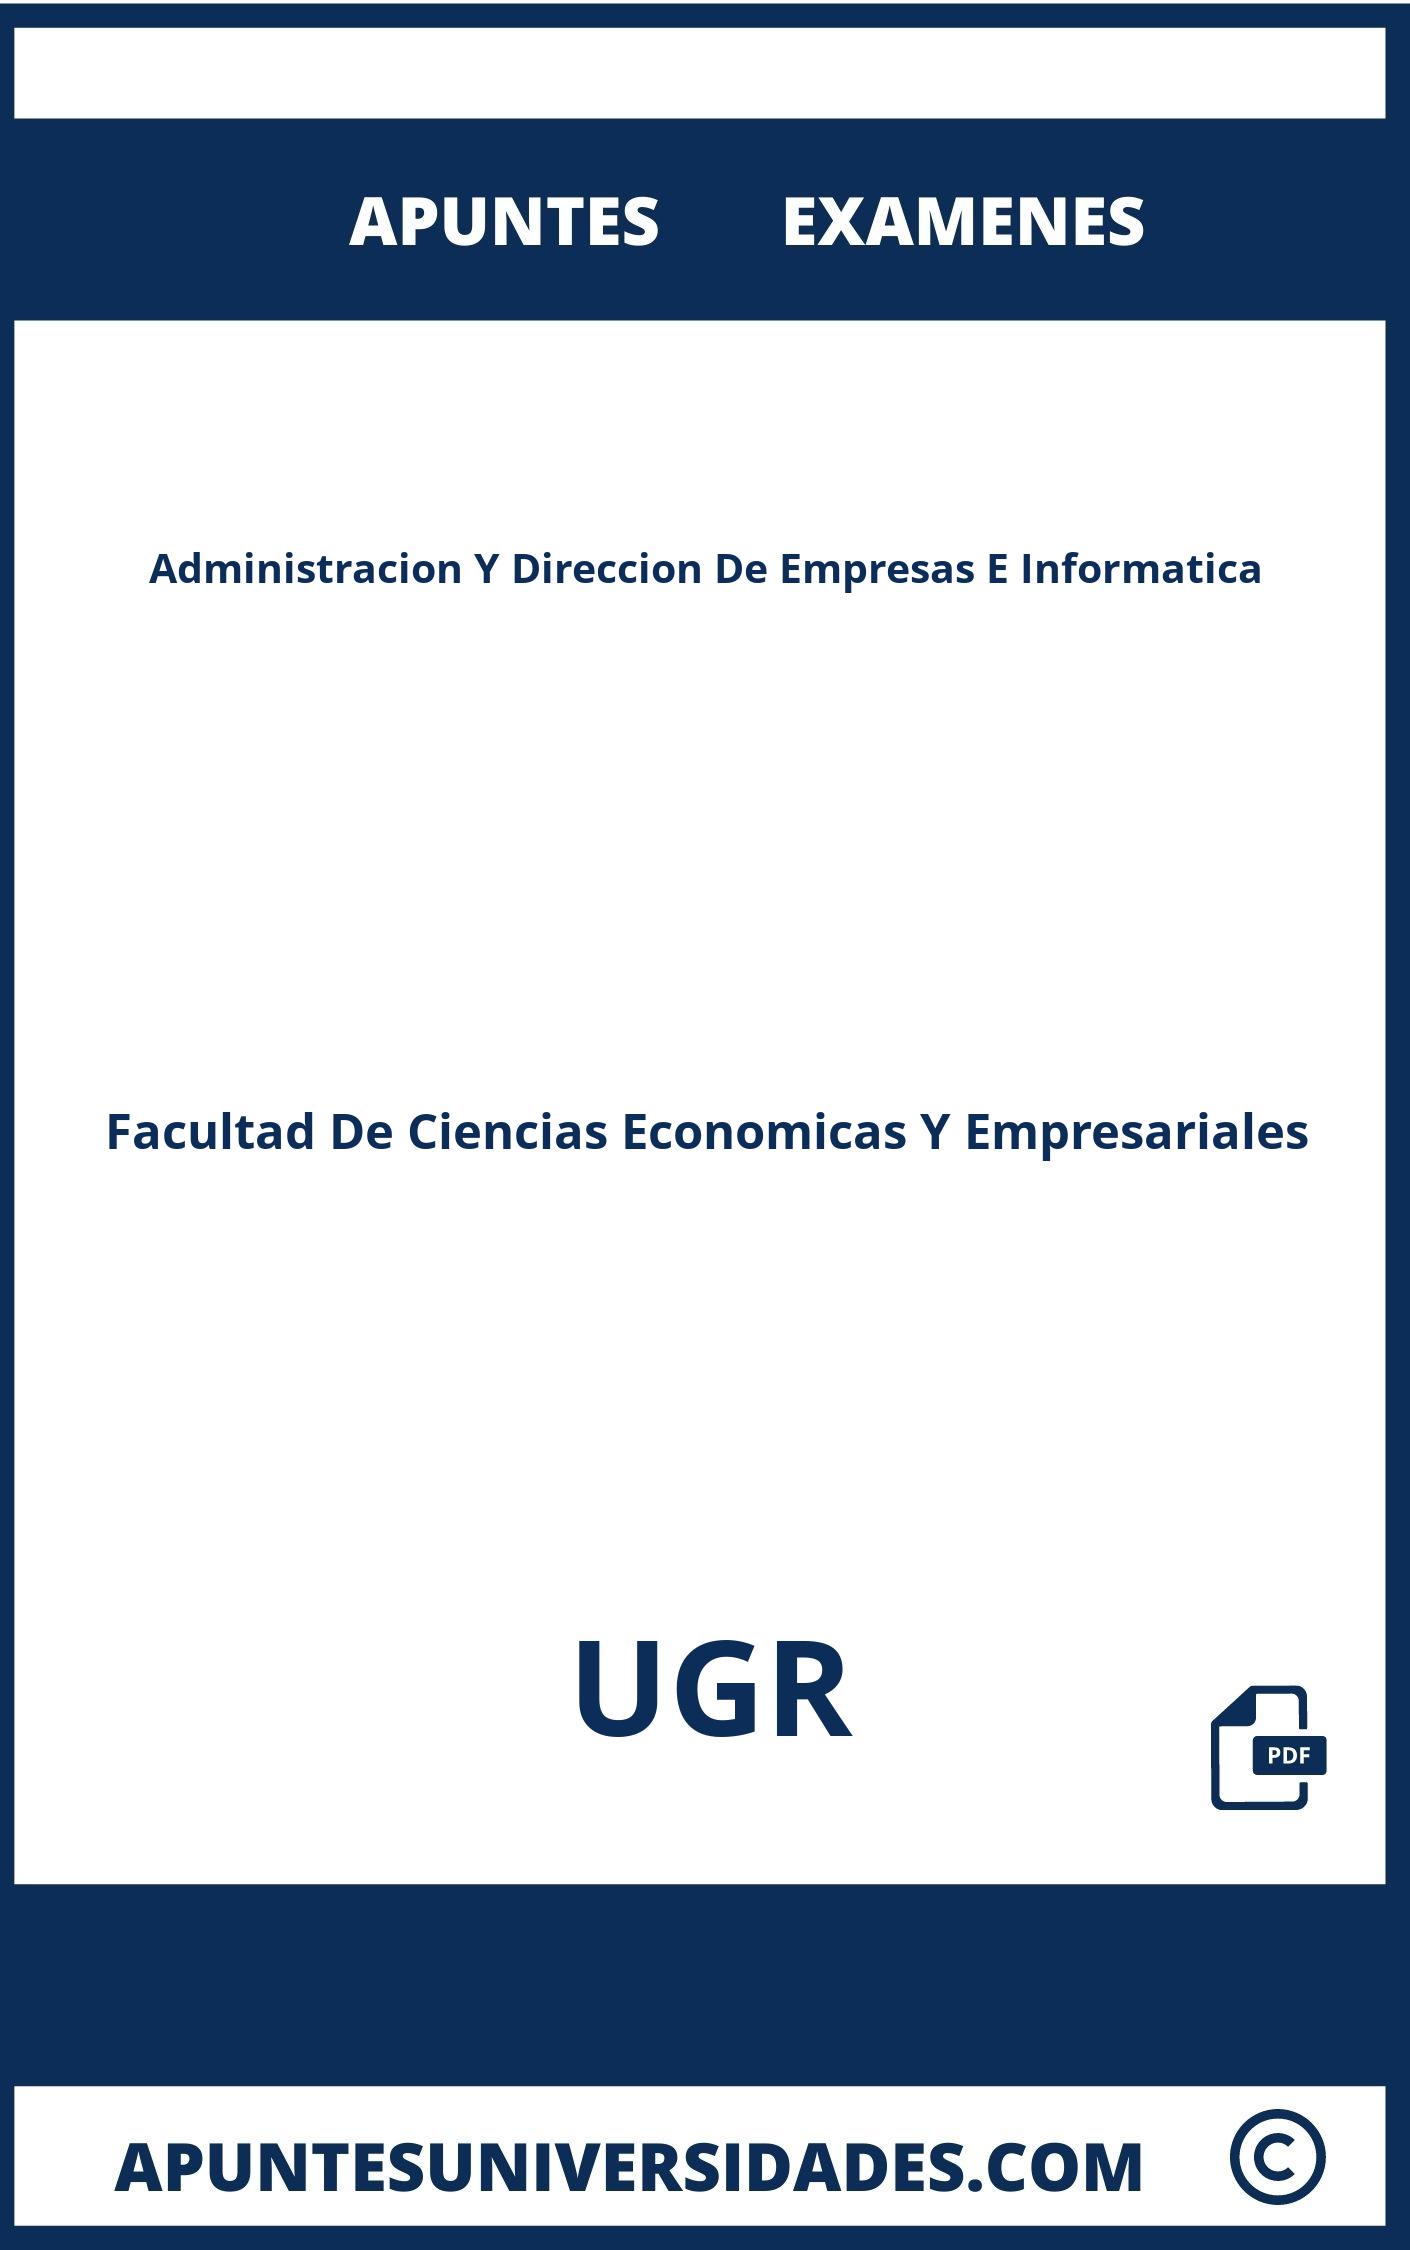 Examenes y Apuntes Administracion Y Direccion De Empresas E Informatica UGR